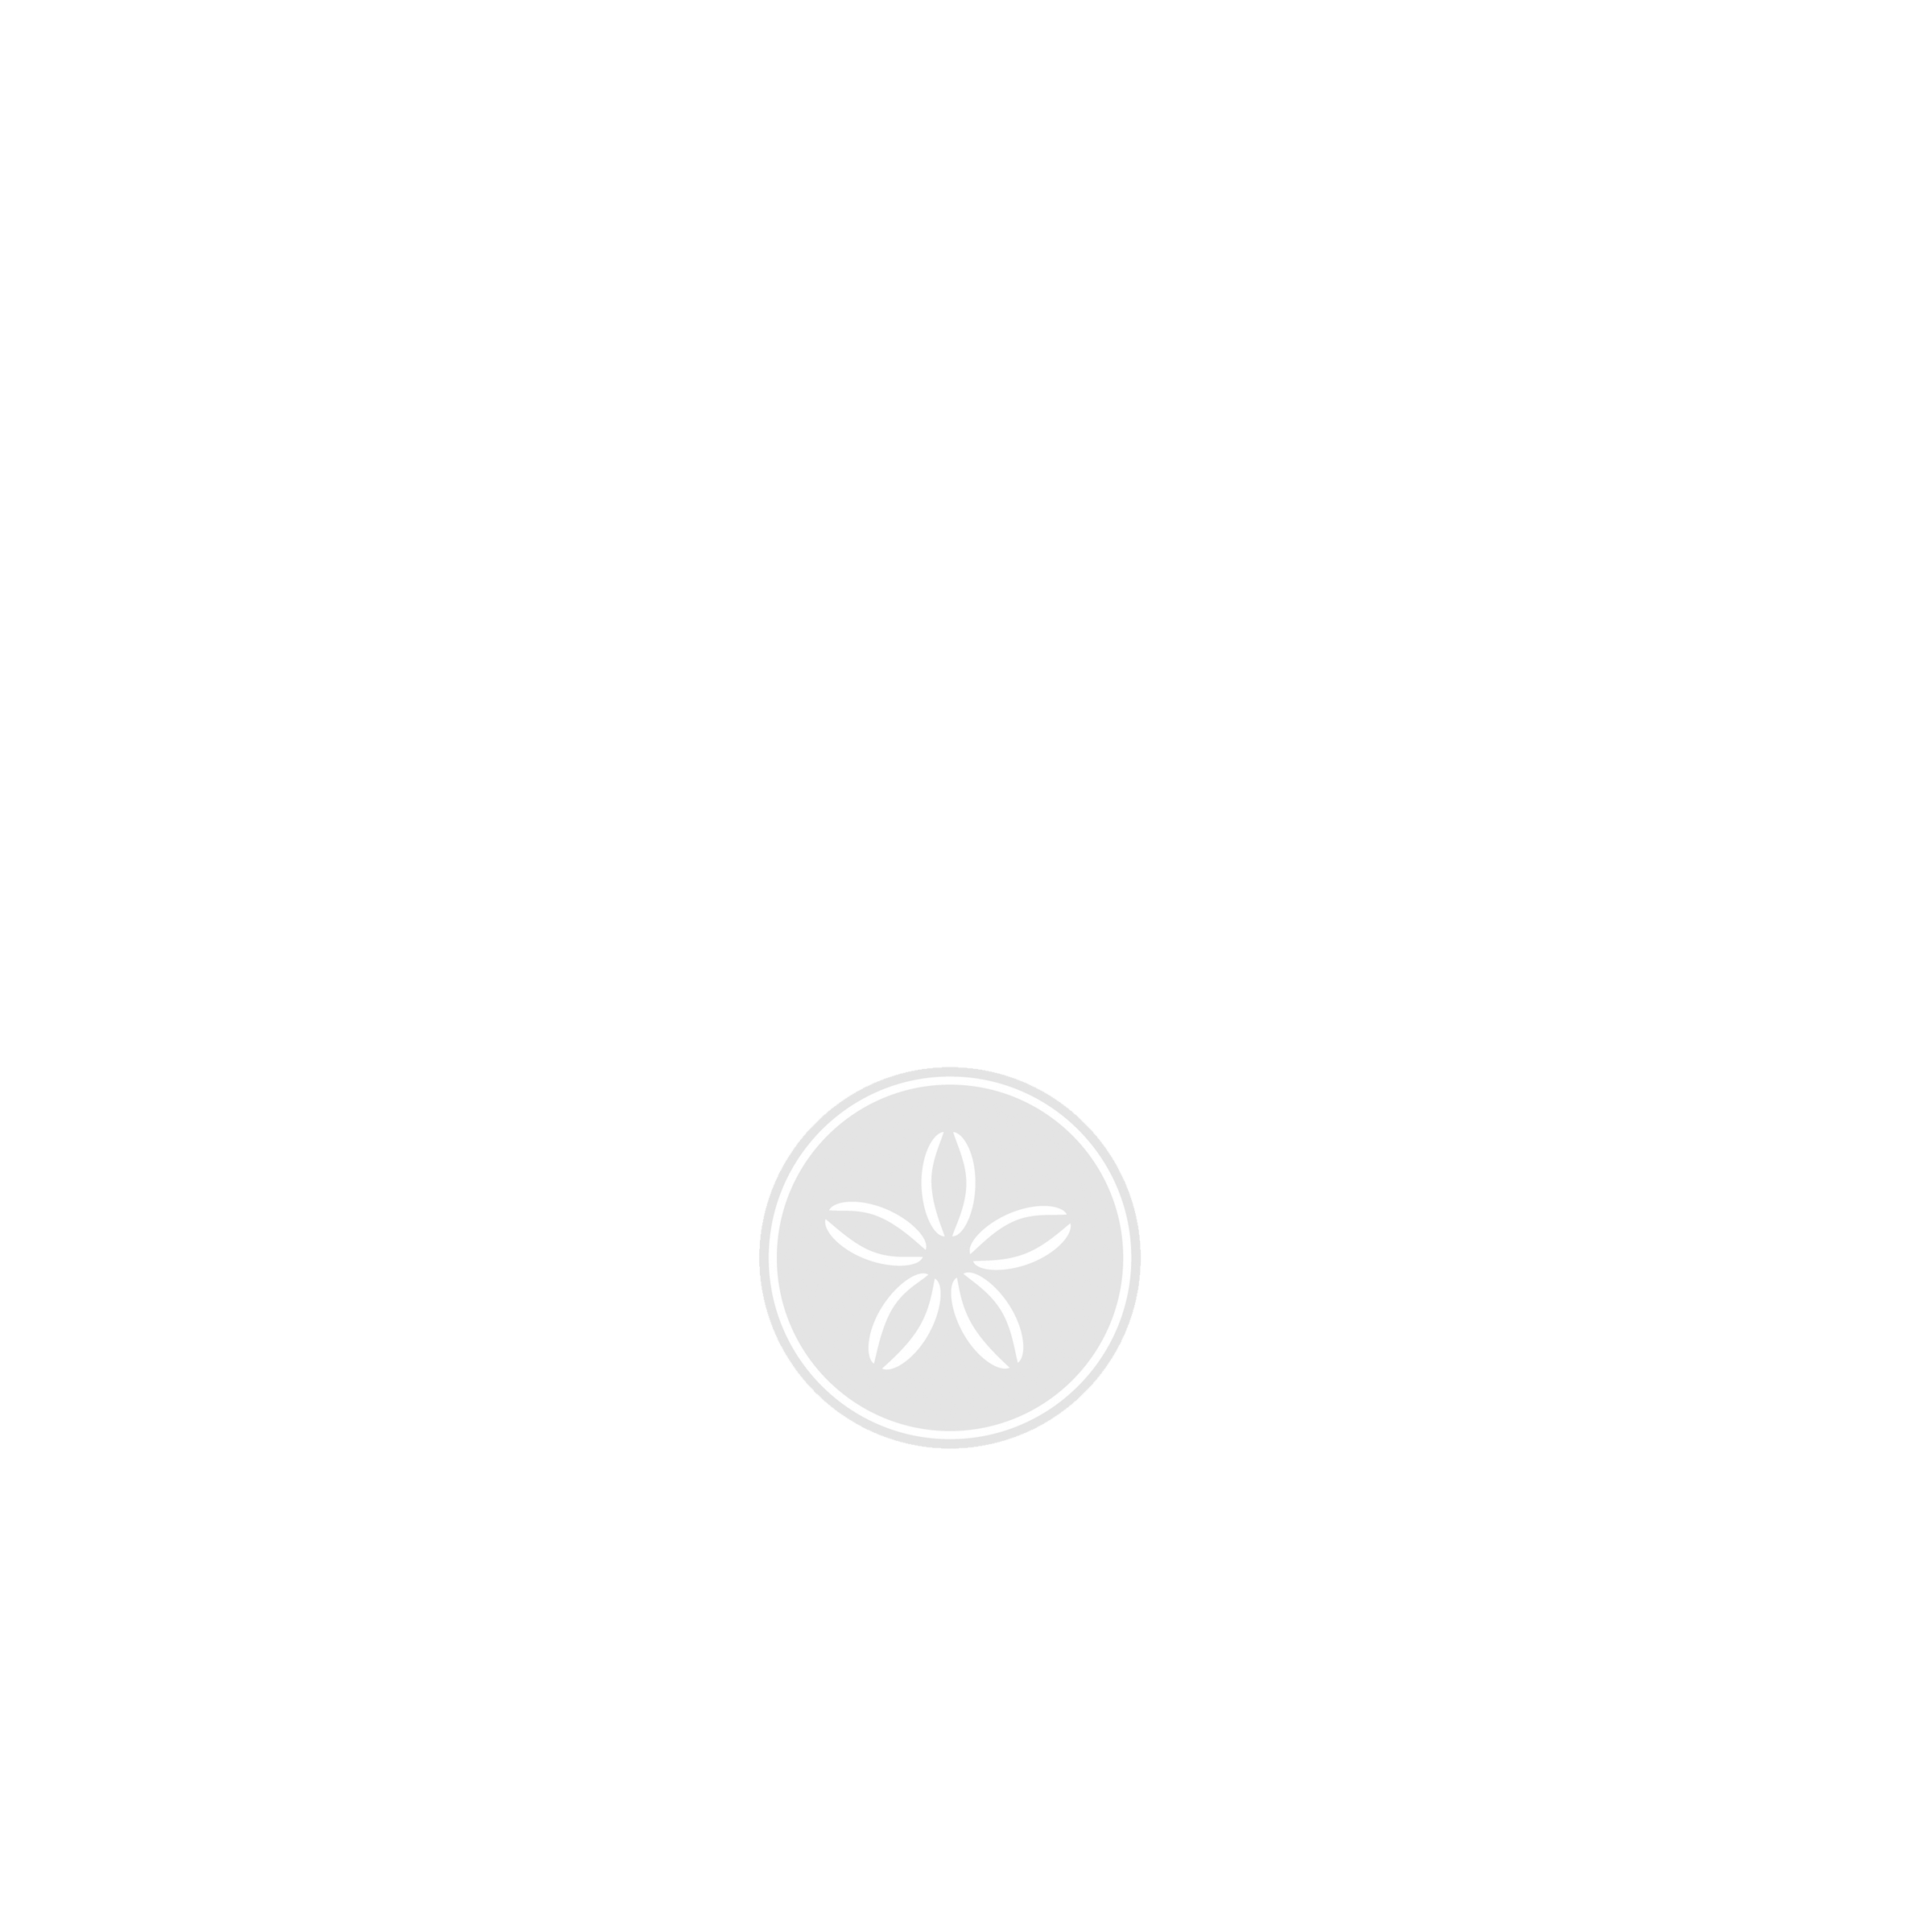 Lana Wescott